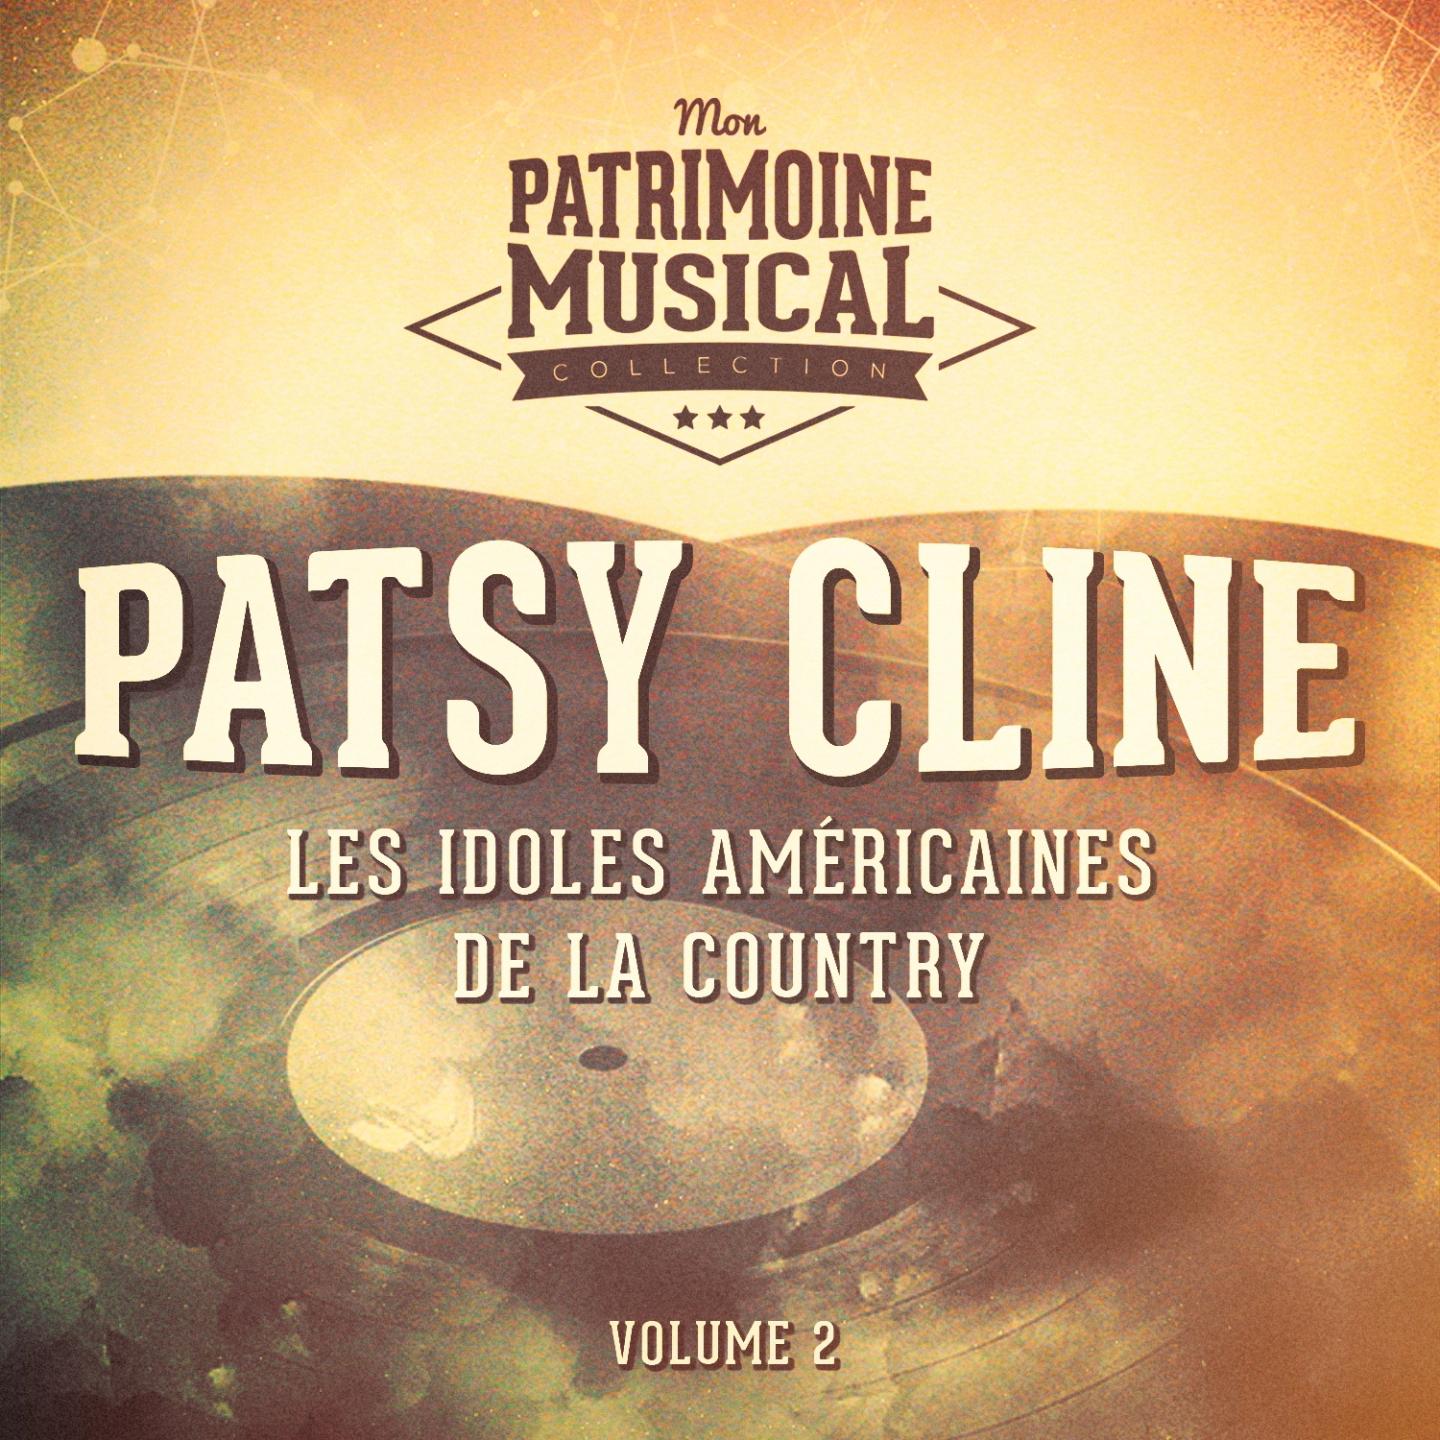 Les idoles américaines de la country : Patsy Cline, Vol. 2